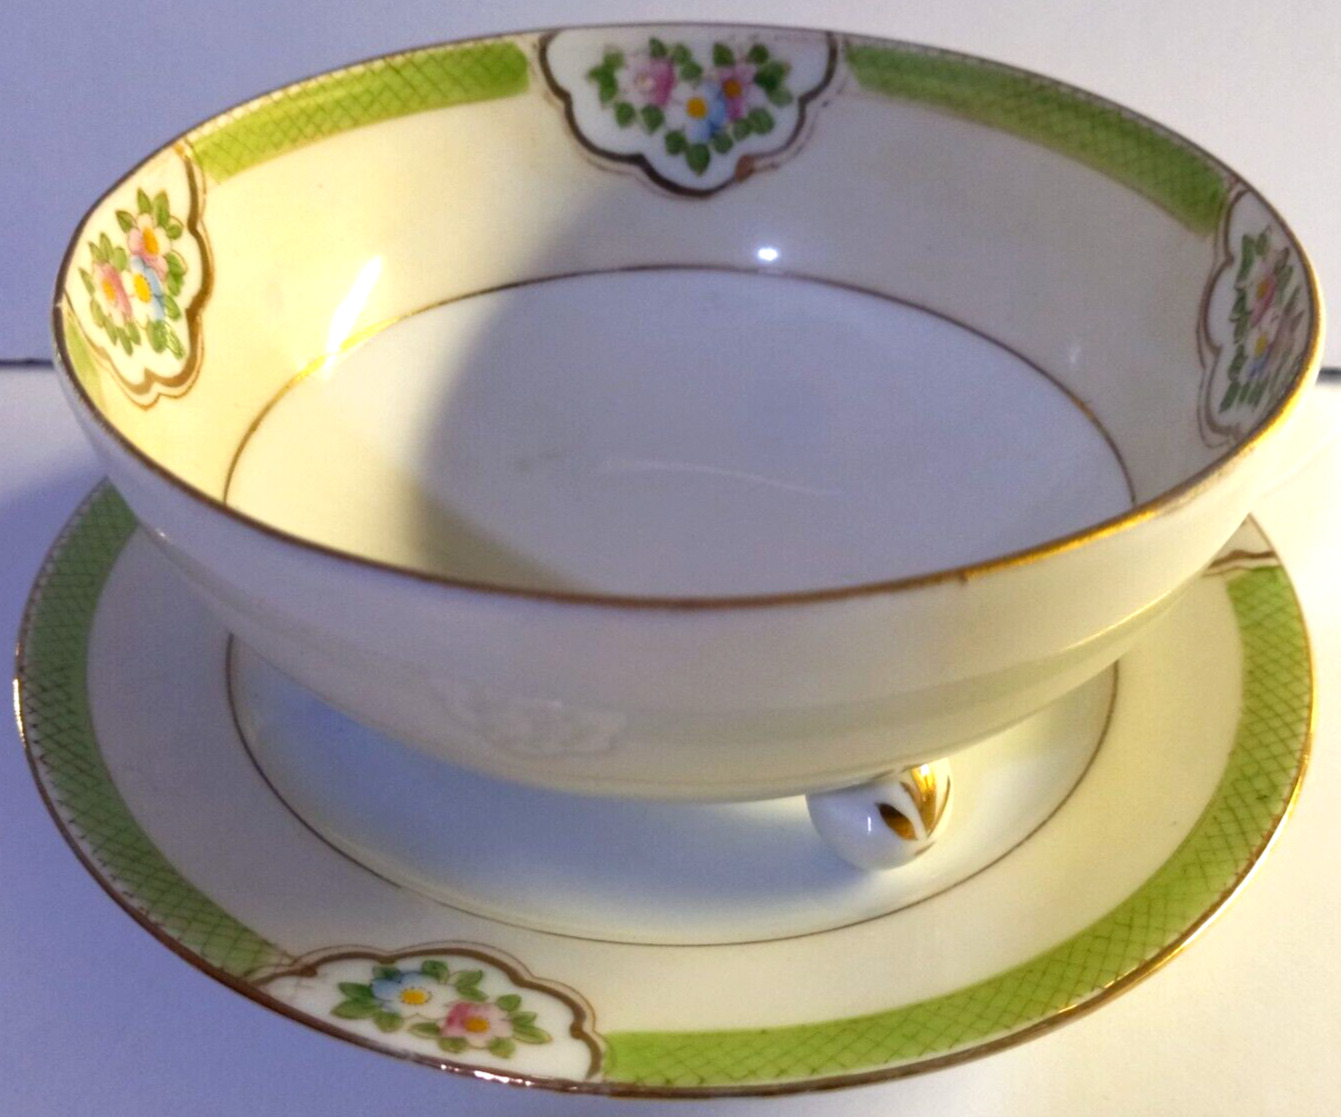 Vintage Nippon Porcelain Rice Bowl or Tea Bowl & Saucer 4.5 in. Diameter